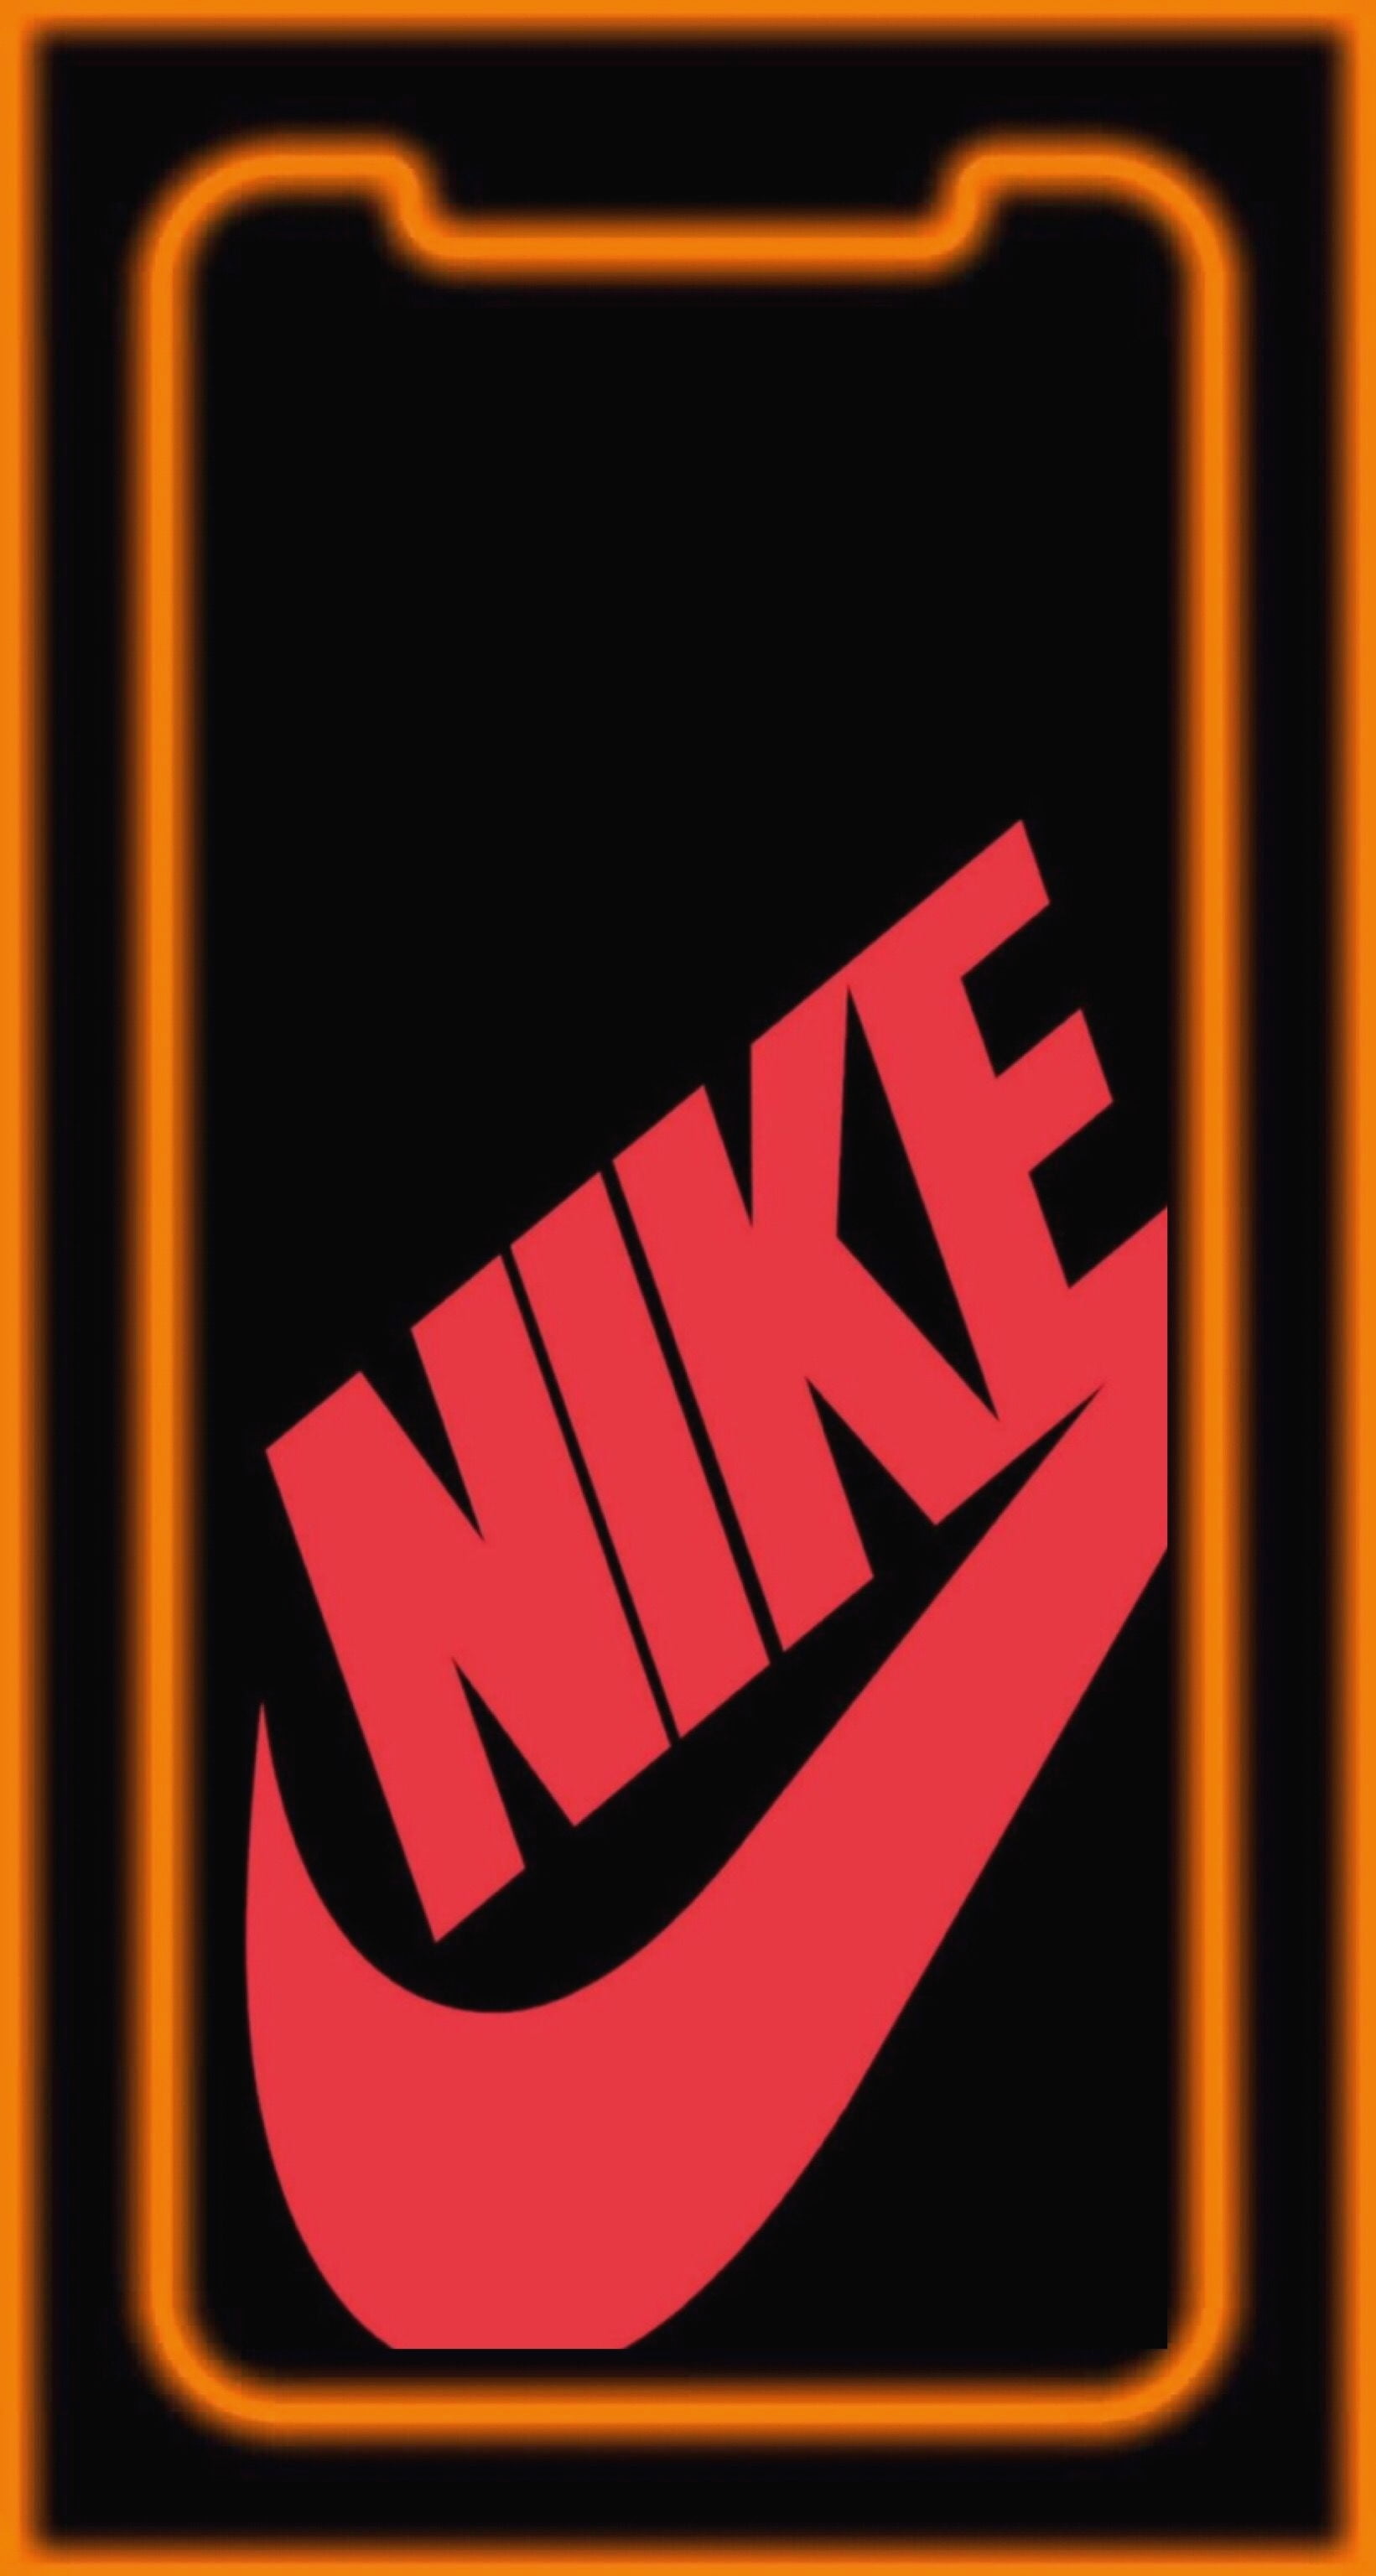 Nike ナイキ オレンジ ブラック Iphone5s壁紙 待受画像ギャラリー